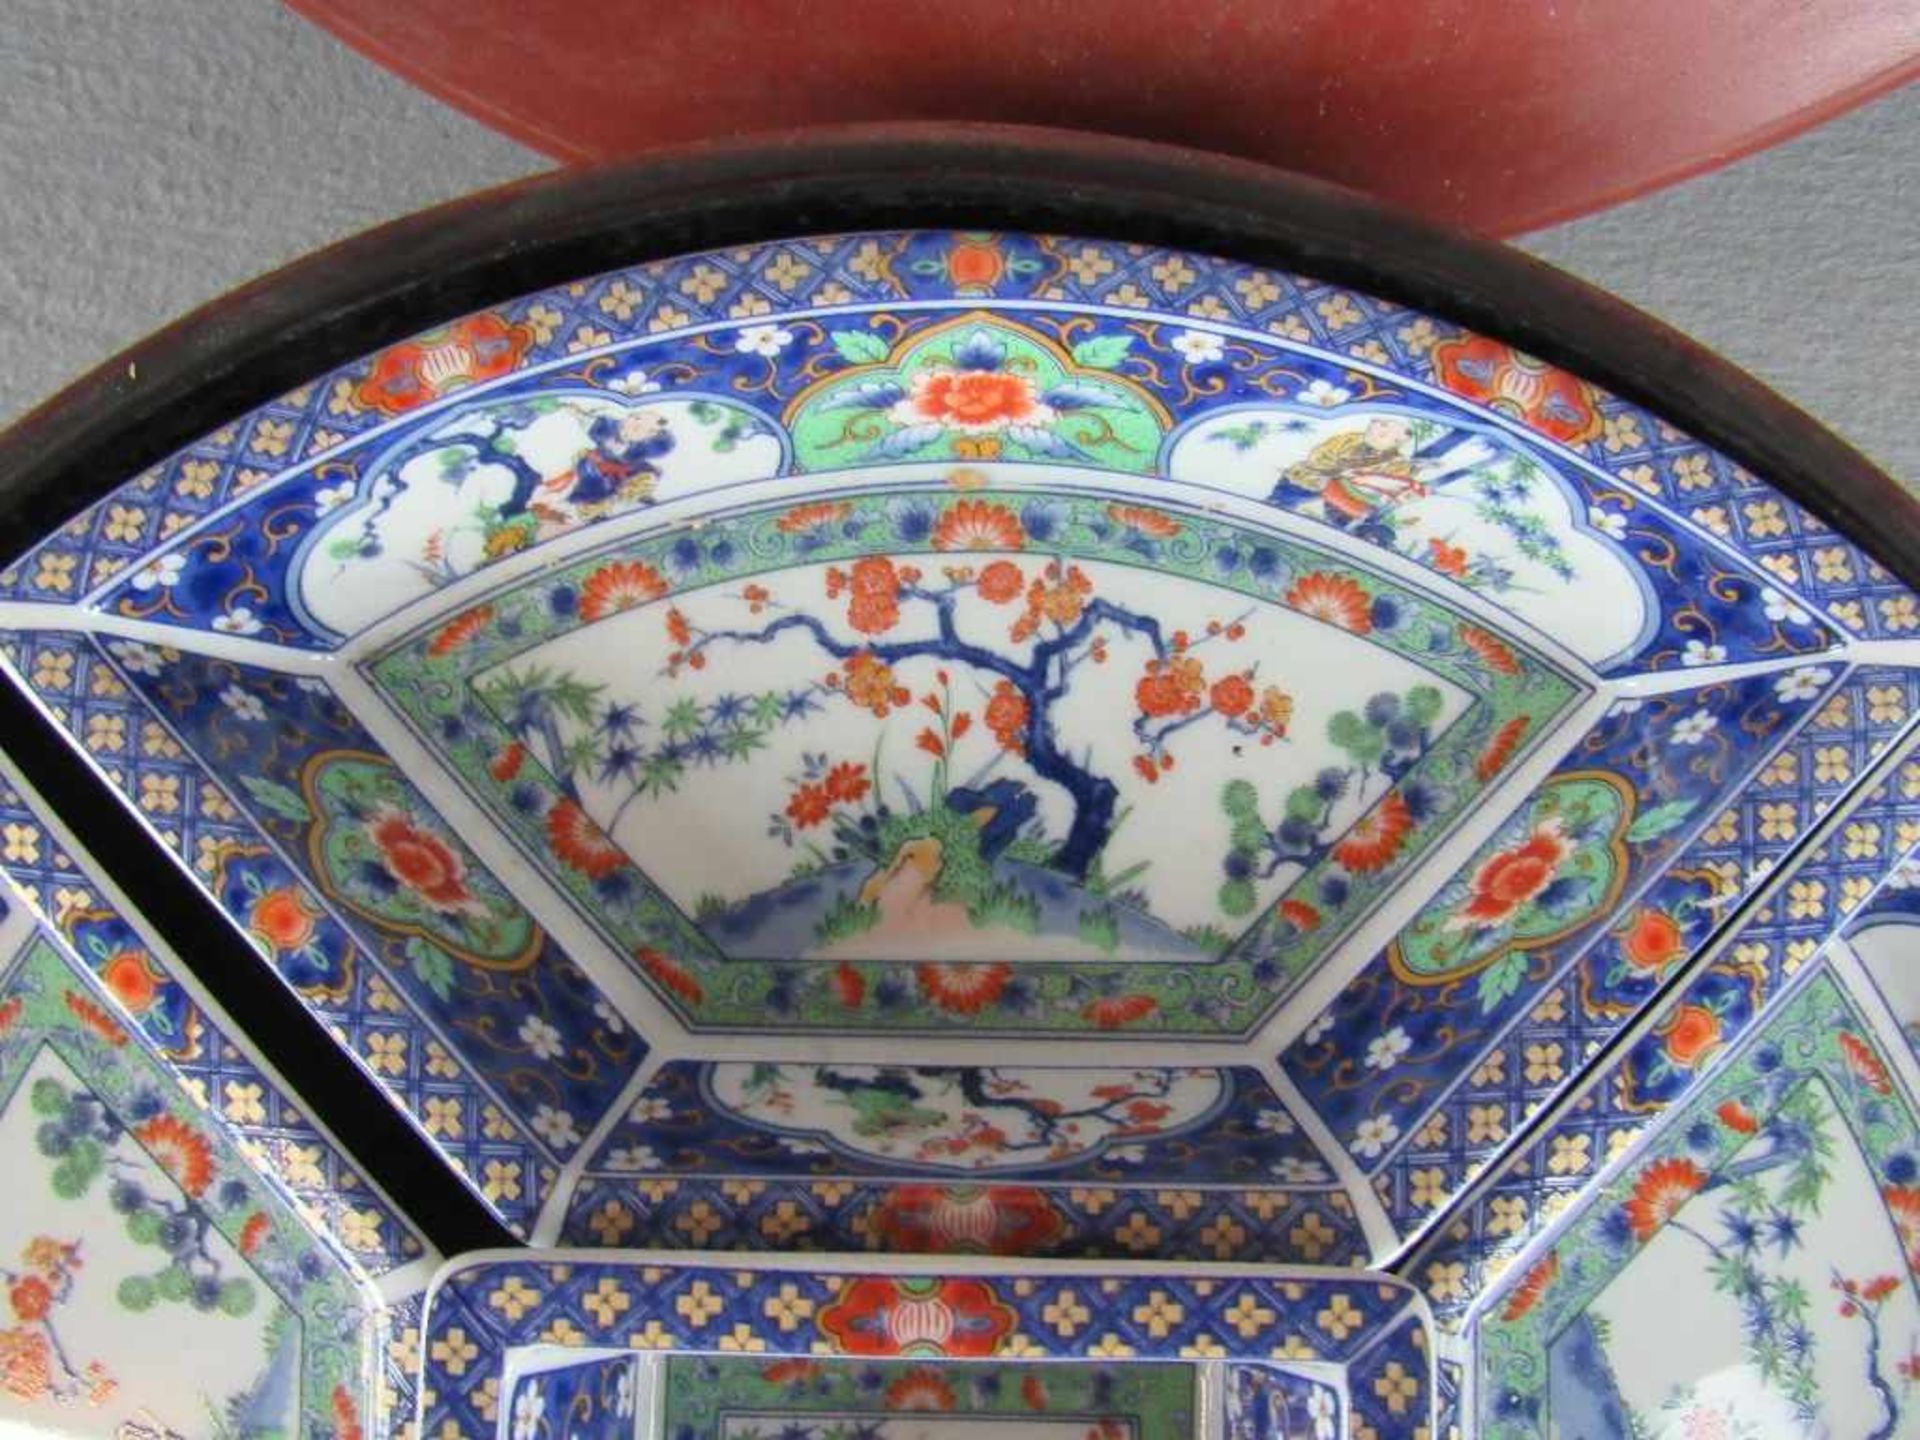 Chinesische Warmhalte bzw - Reismenagerie Schälchen in lasierter Keramik drehbare Holzschatulle - Image 4 of 5